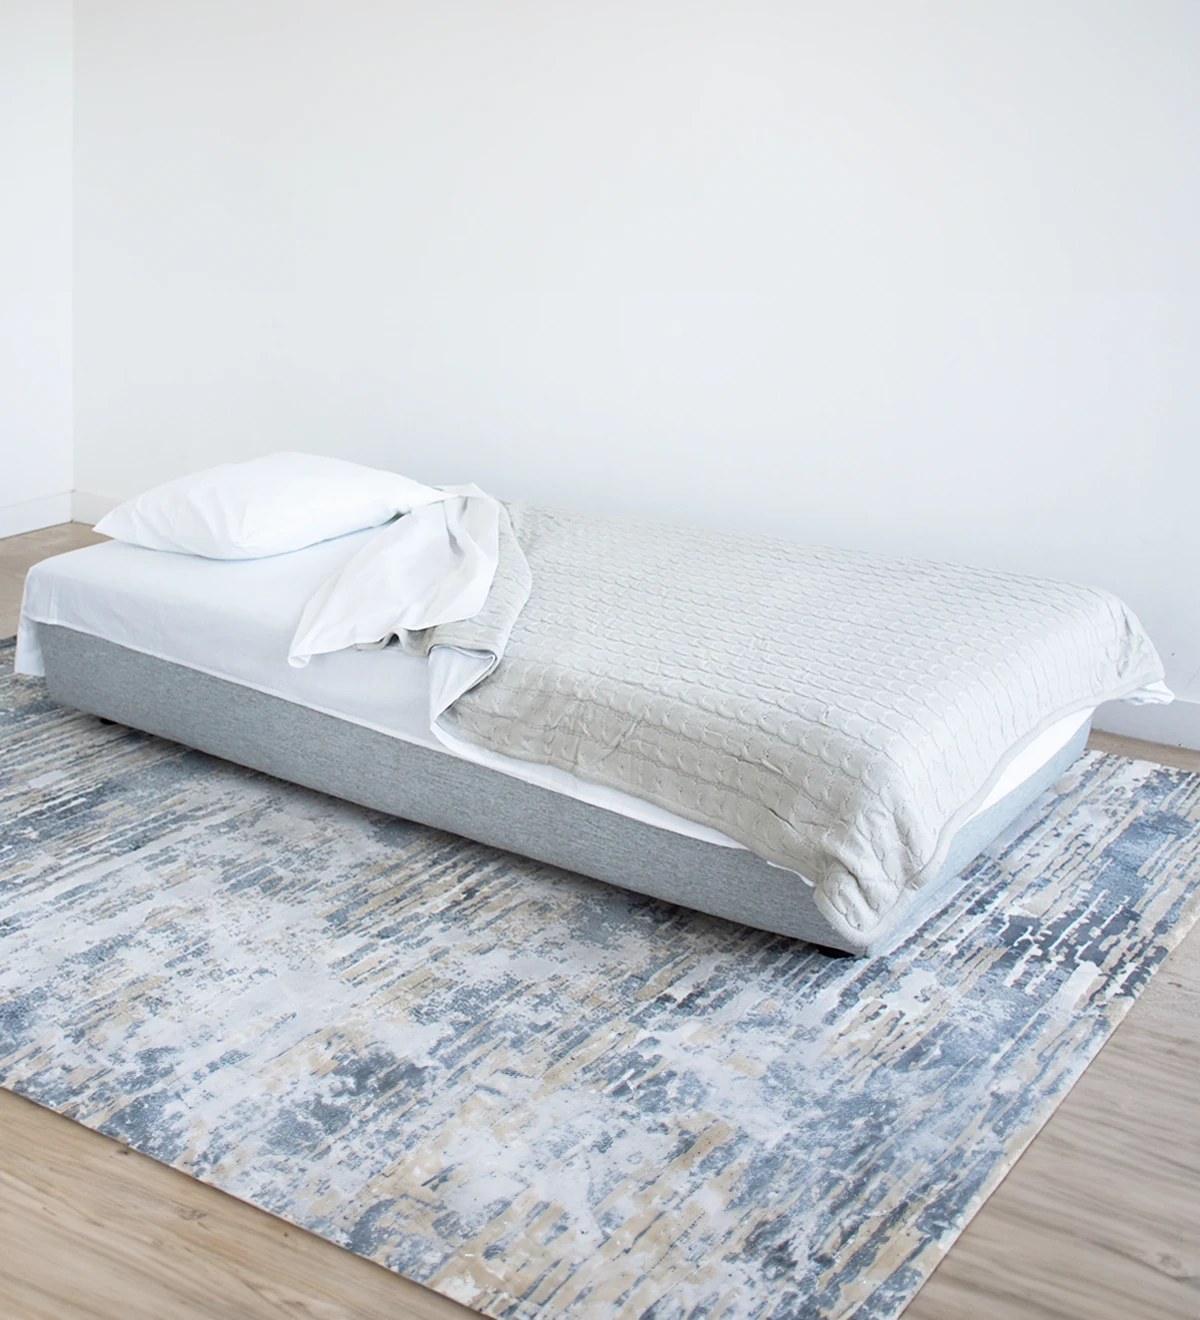 Canapé-lit, revêtu de tissu, avec coussins de dossier amovibles.